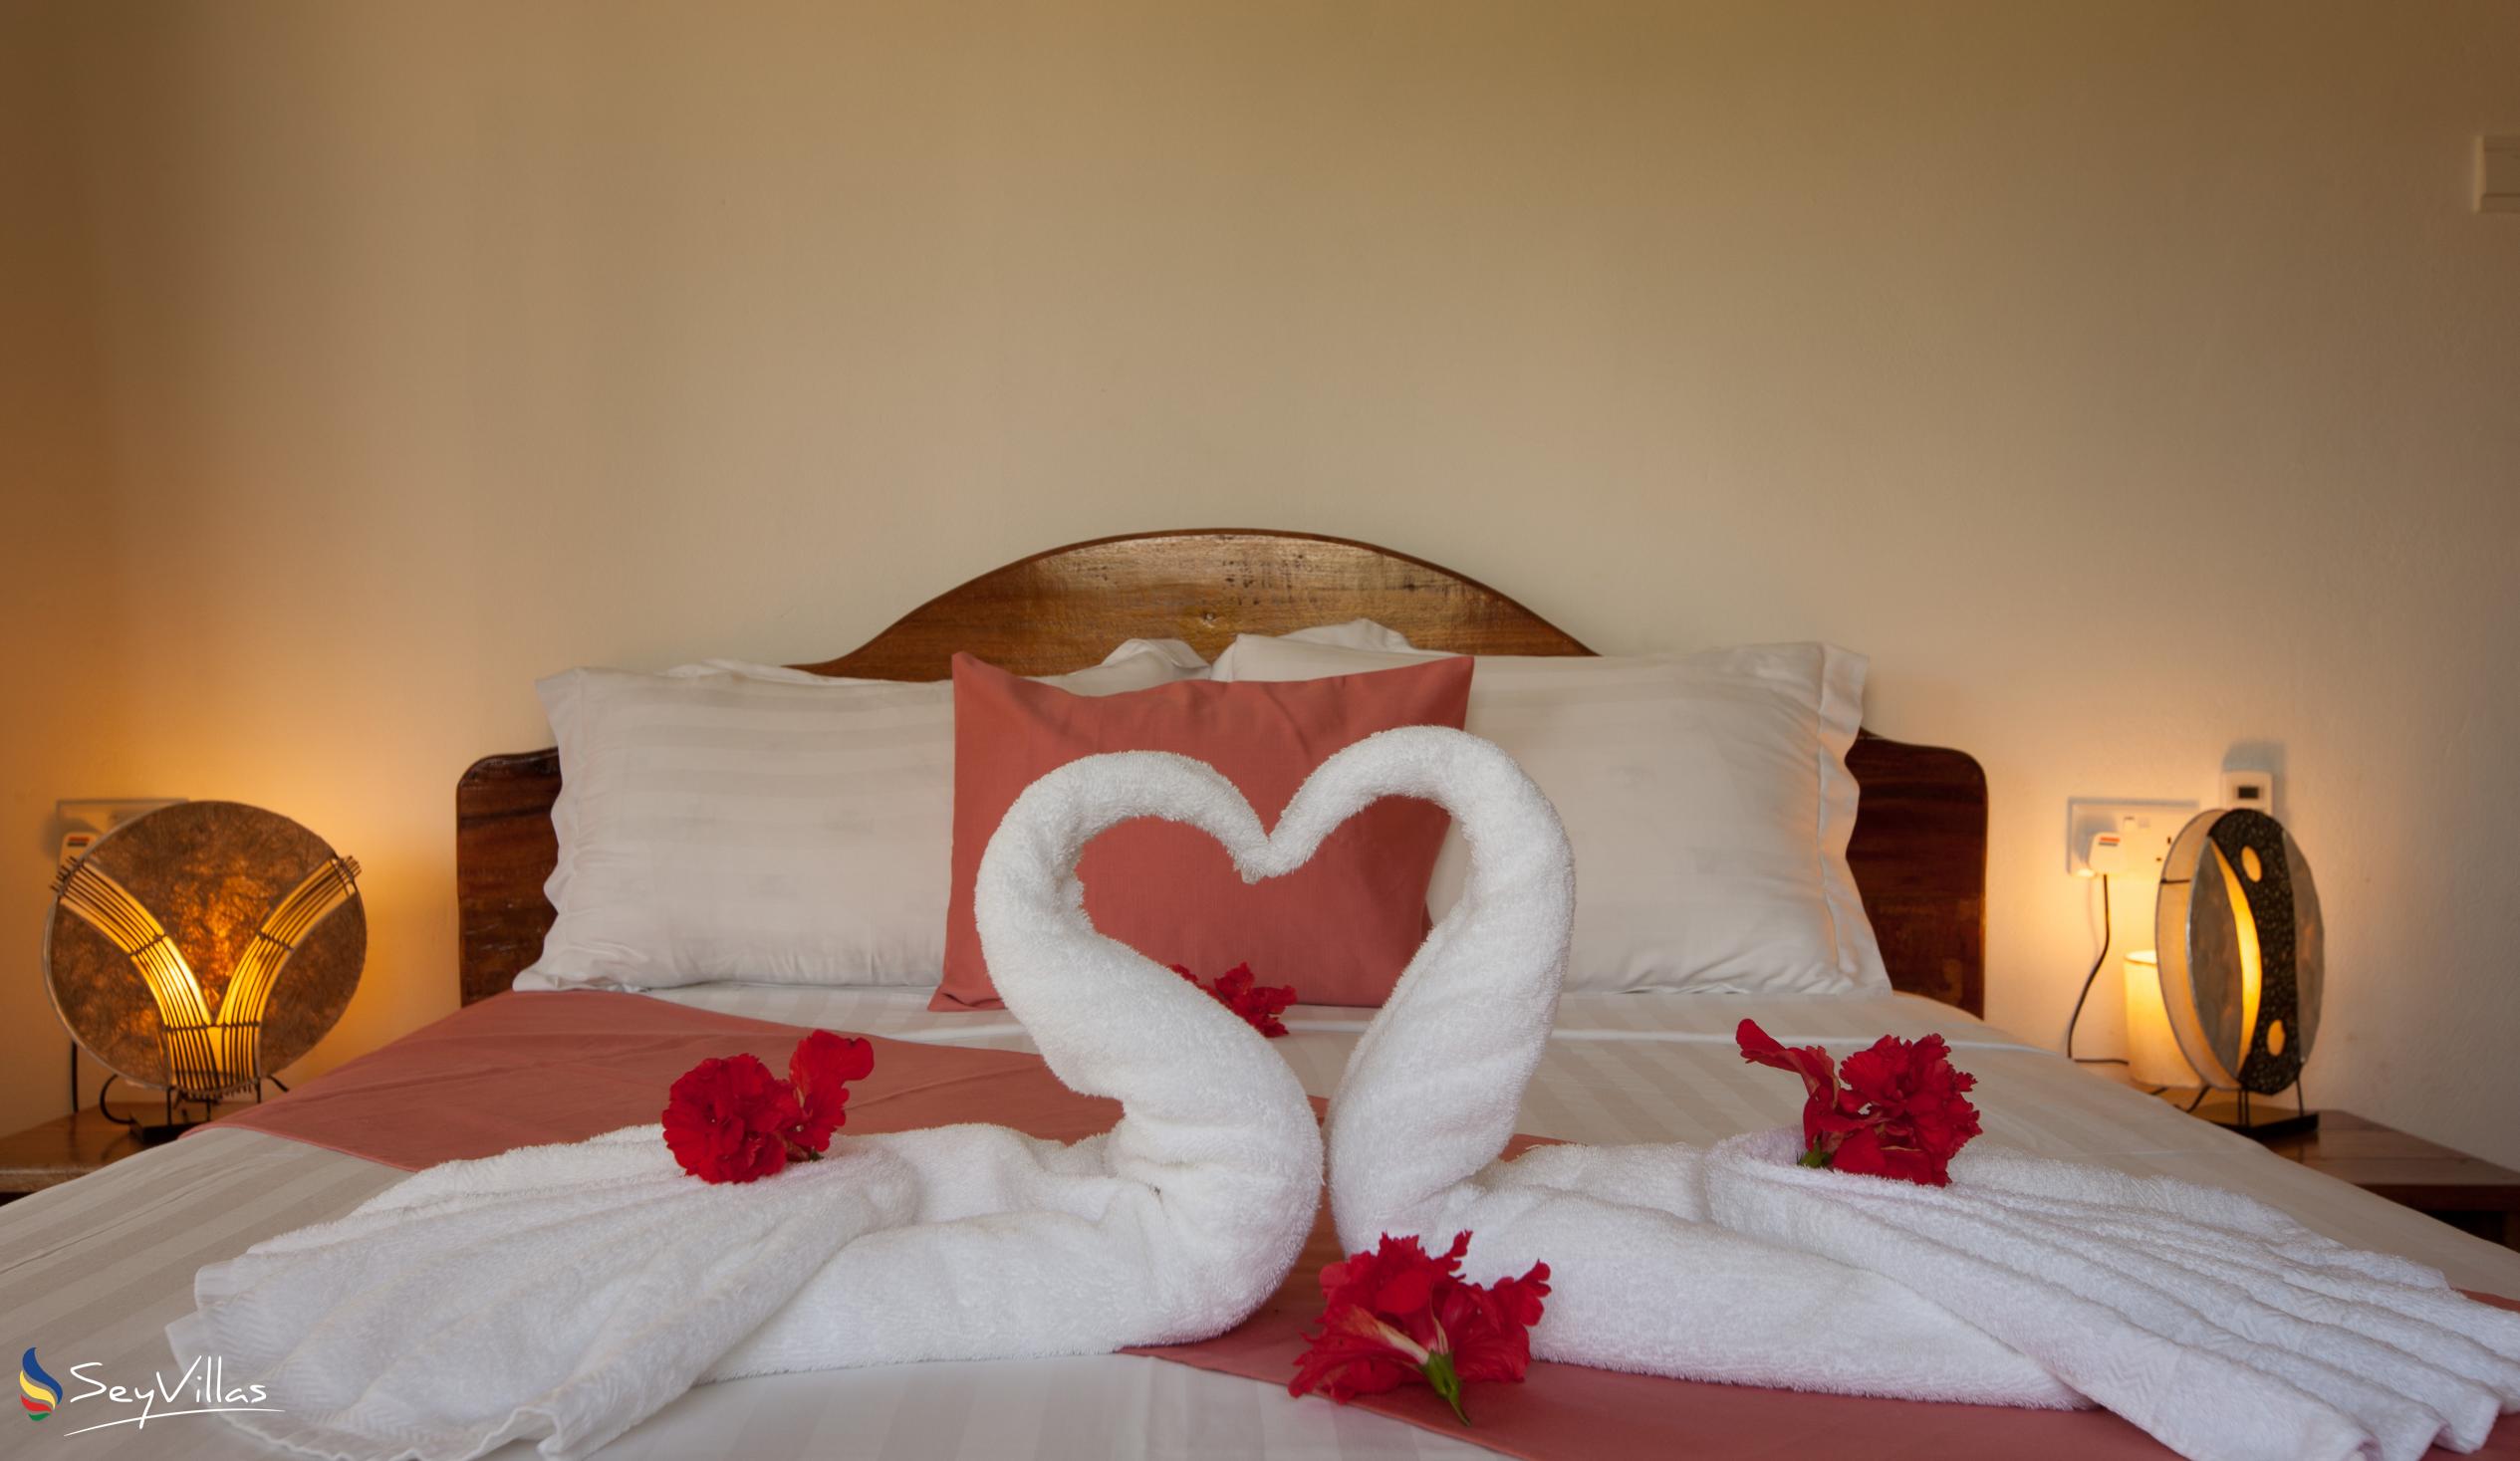 Foto 53: Hostellerie La Digue - Bungalow con 2 camere da letto - La Digue (Seychelles)